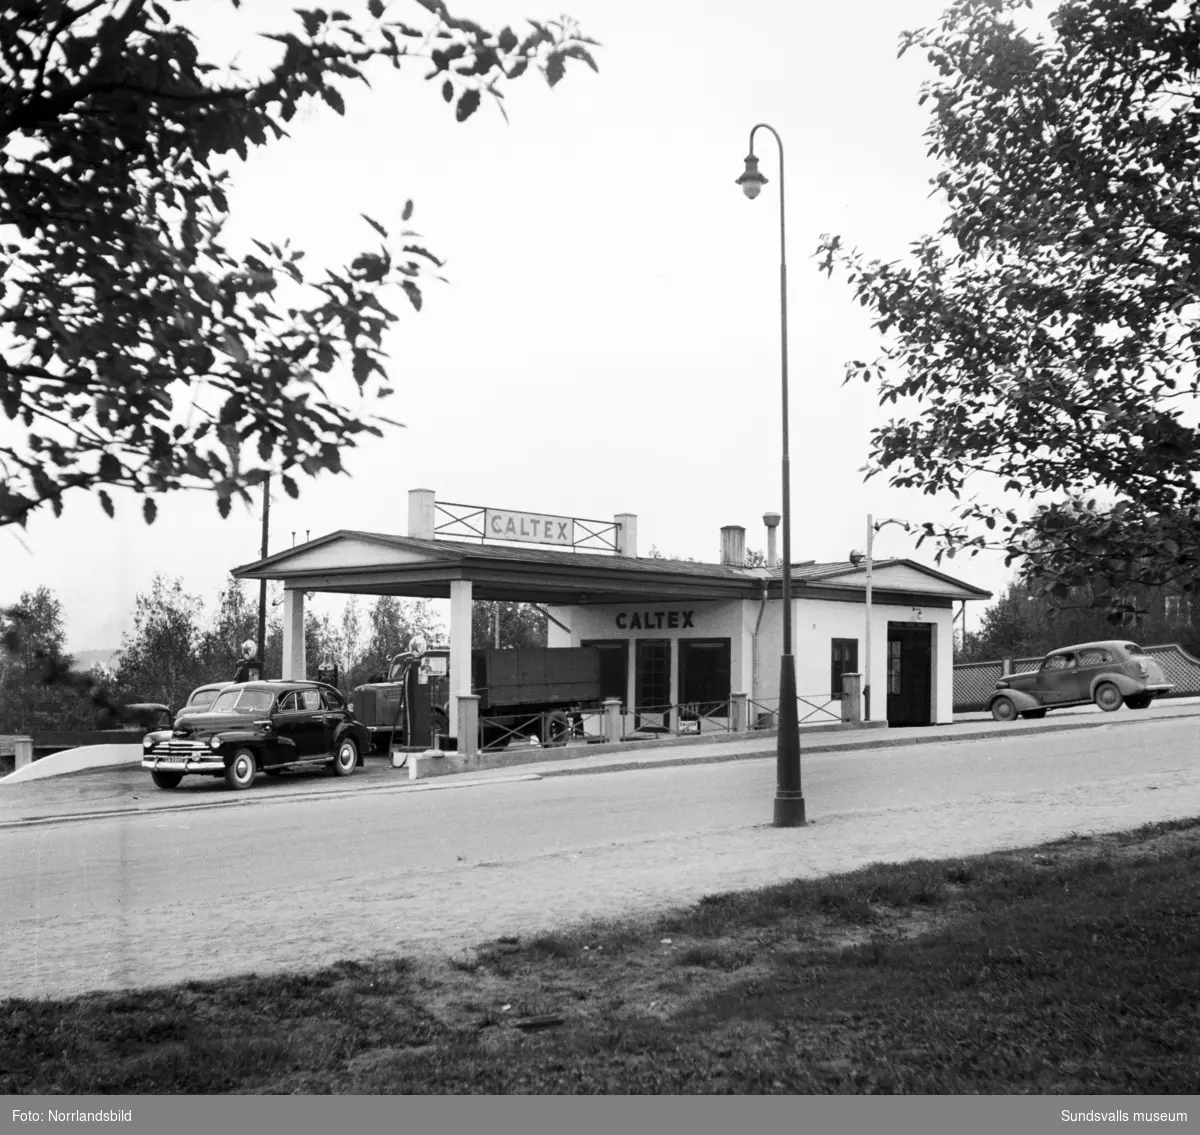 Caltex bensinstation i korsningen av Fridhemsgatan och Björneborgsgatan. Innehavaren hette Allan Sundbom.